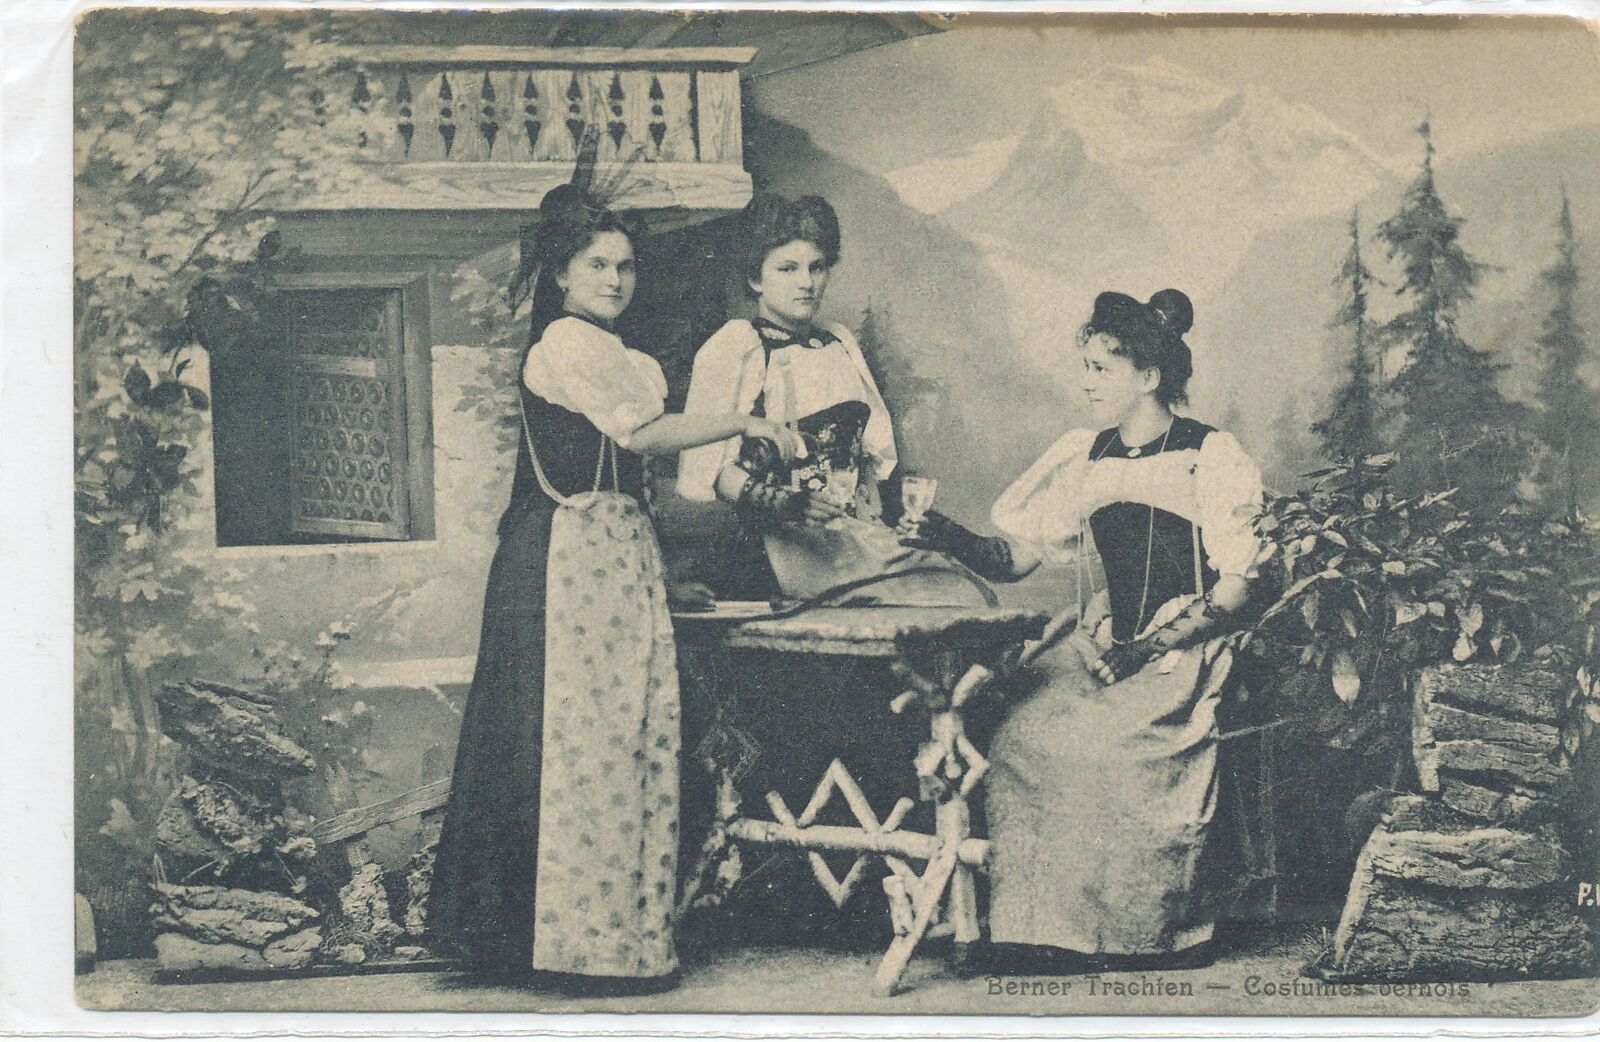 Women sharing a drink - Berner Trachten - Costumes Bernois postcard